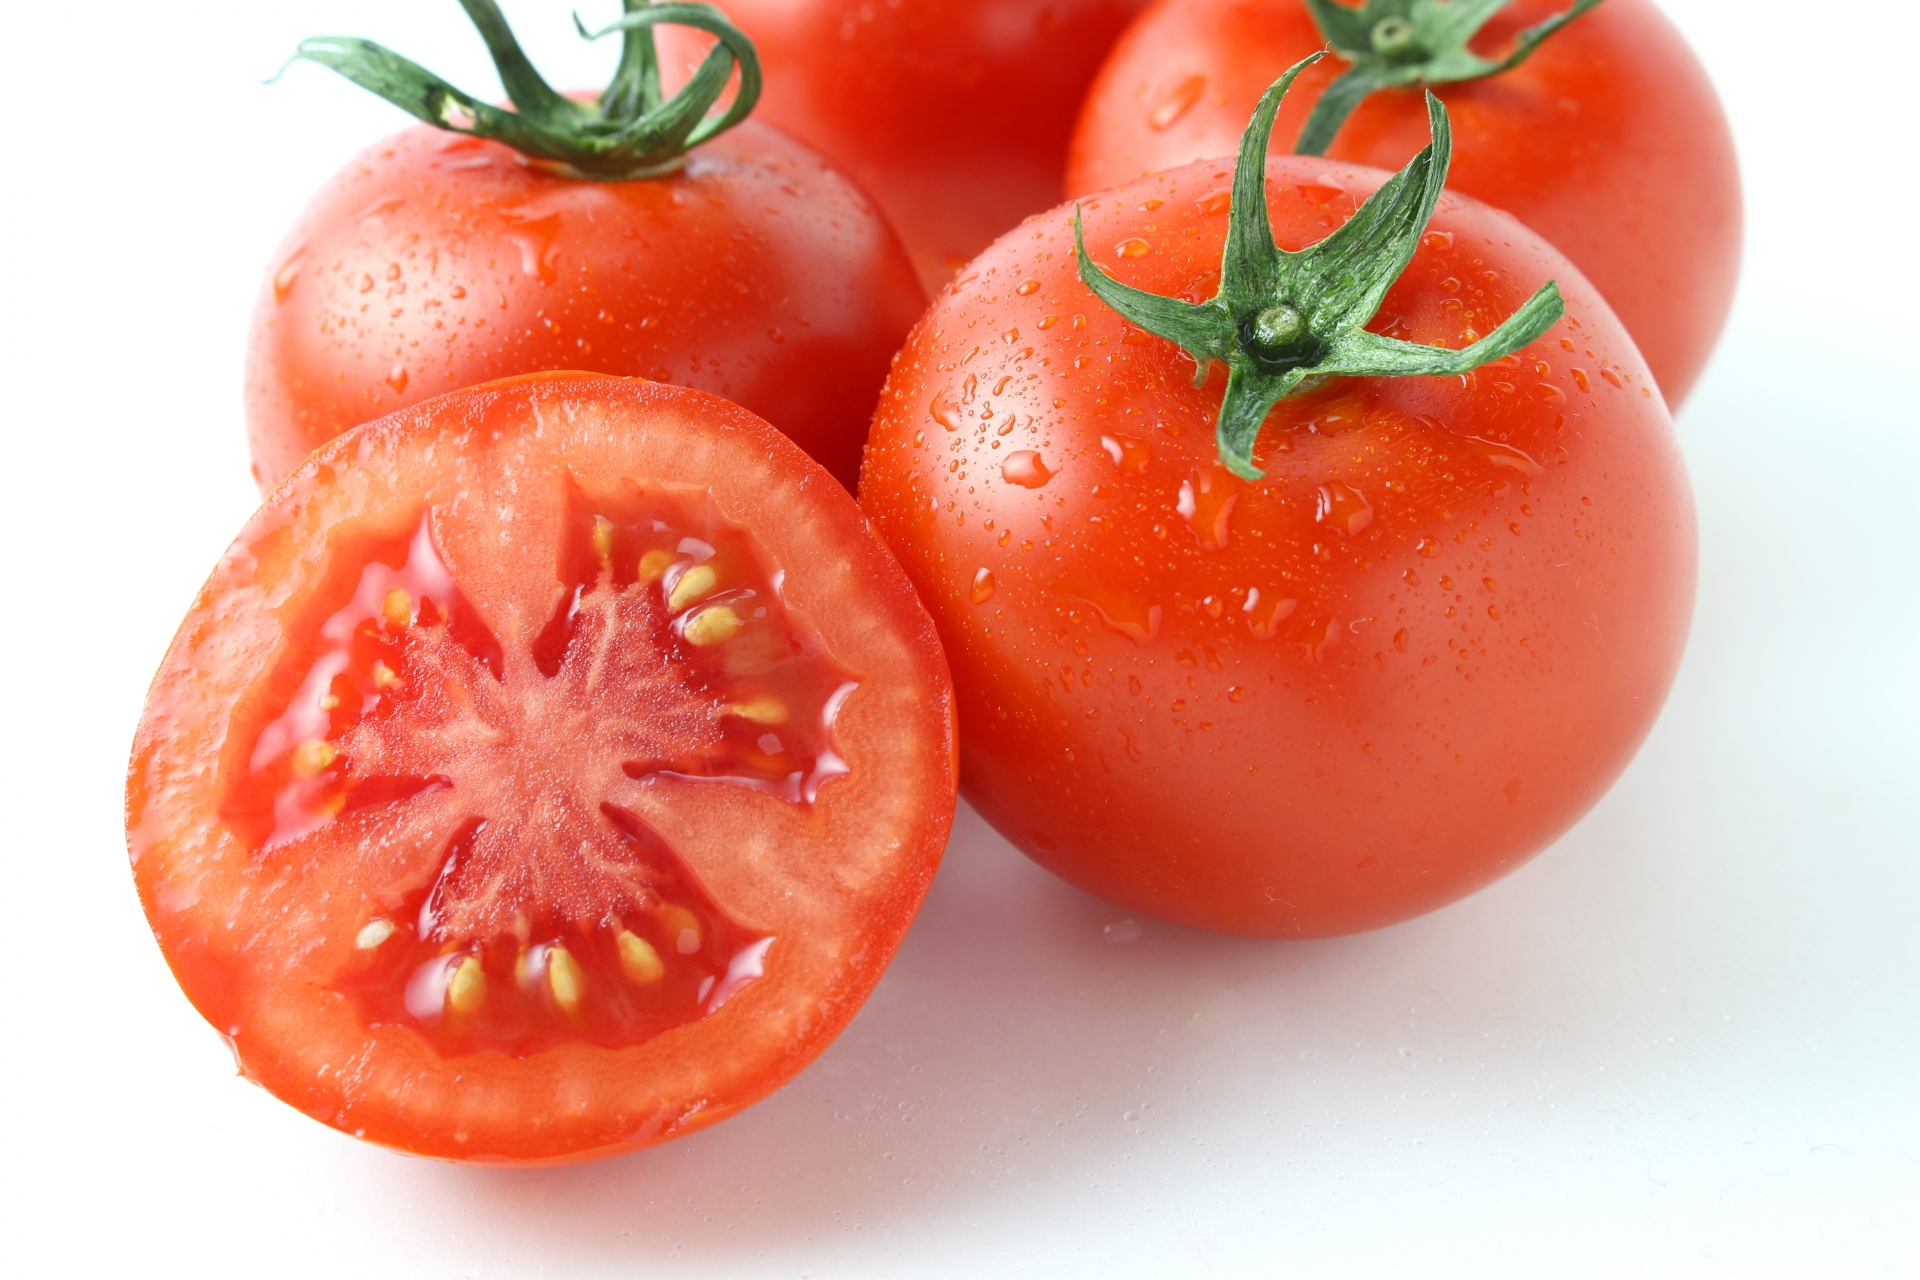 プランターでミニトマト栽培 育て方と準備する物と育て方のコツ 生活の緑